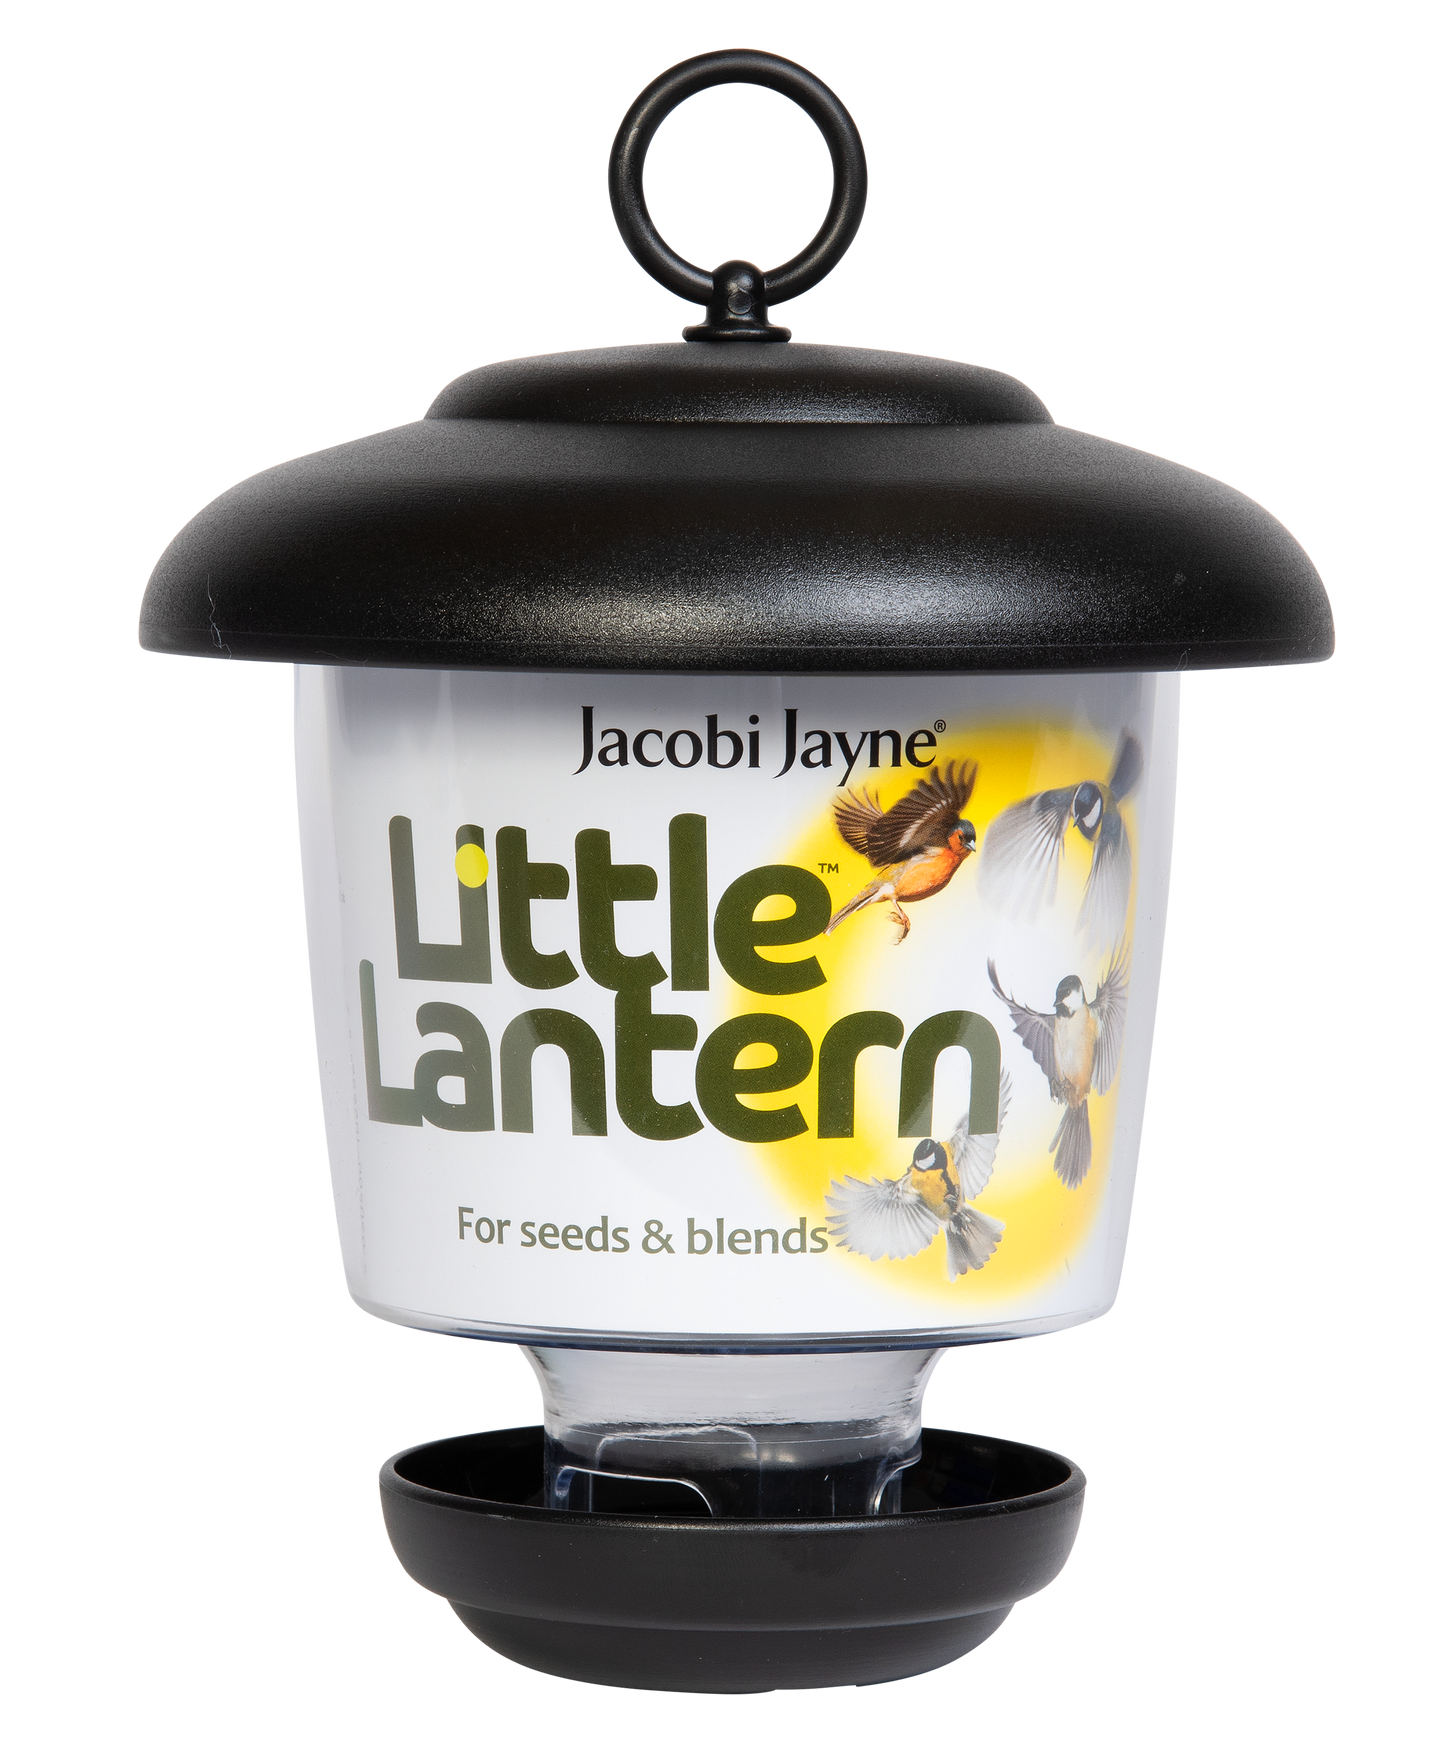 Distributeur de graines Little Lantern™